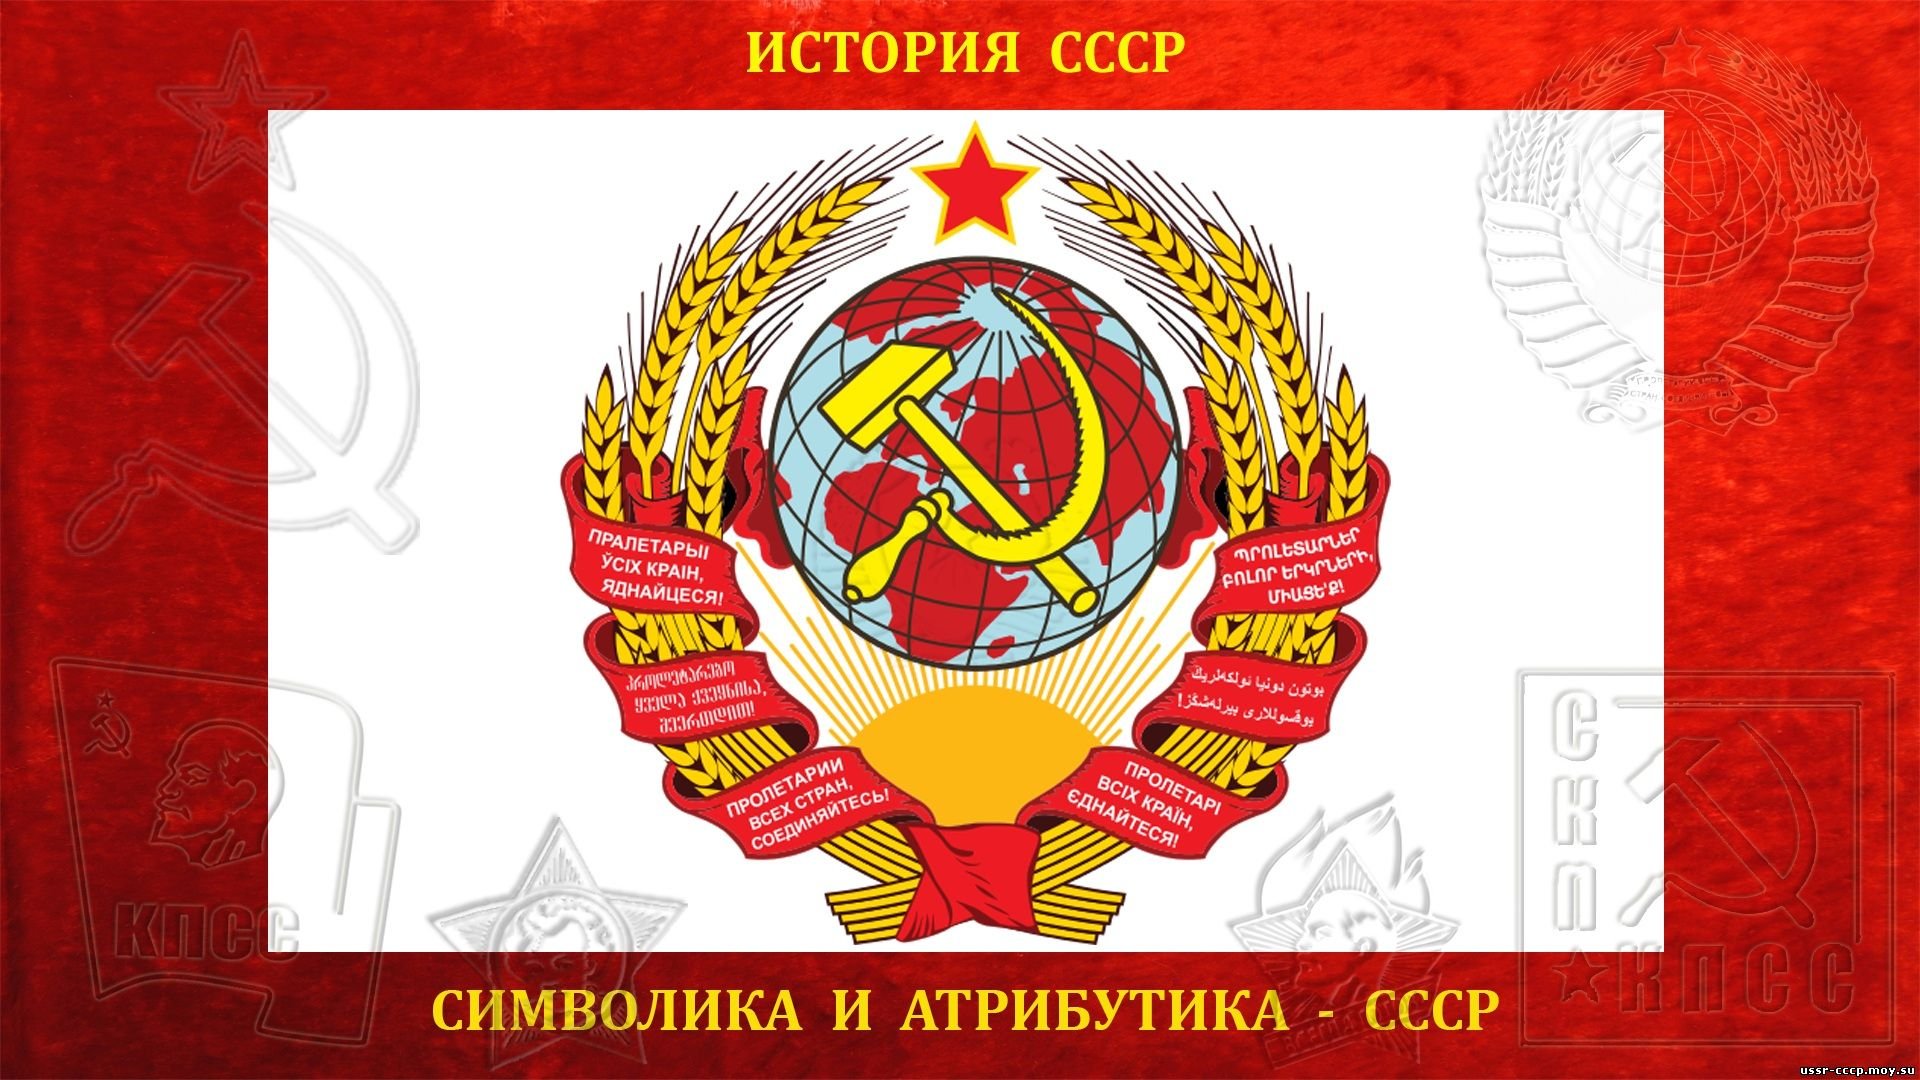 В какой период был советский союз. Первый герб СССР 1922. Первый герб СССР 1924. Гербы СССР 1923-1991. Герб СССР образца 1923 года.